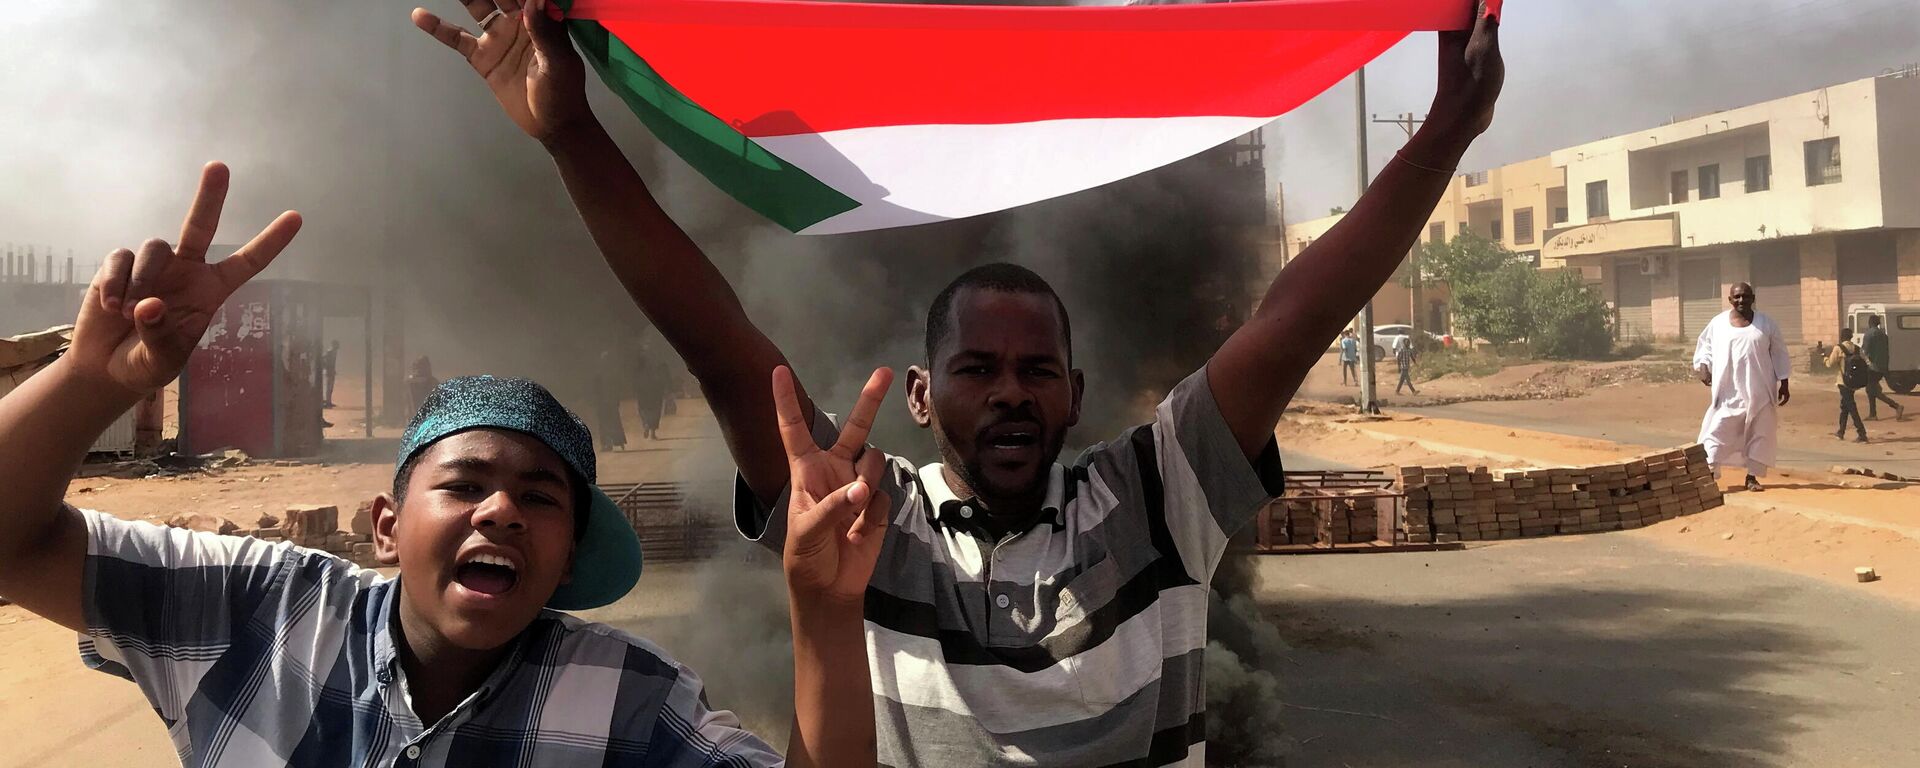 Las protestas en Sudán - Sputnik Mundo, 1920, 25.10.2021